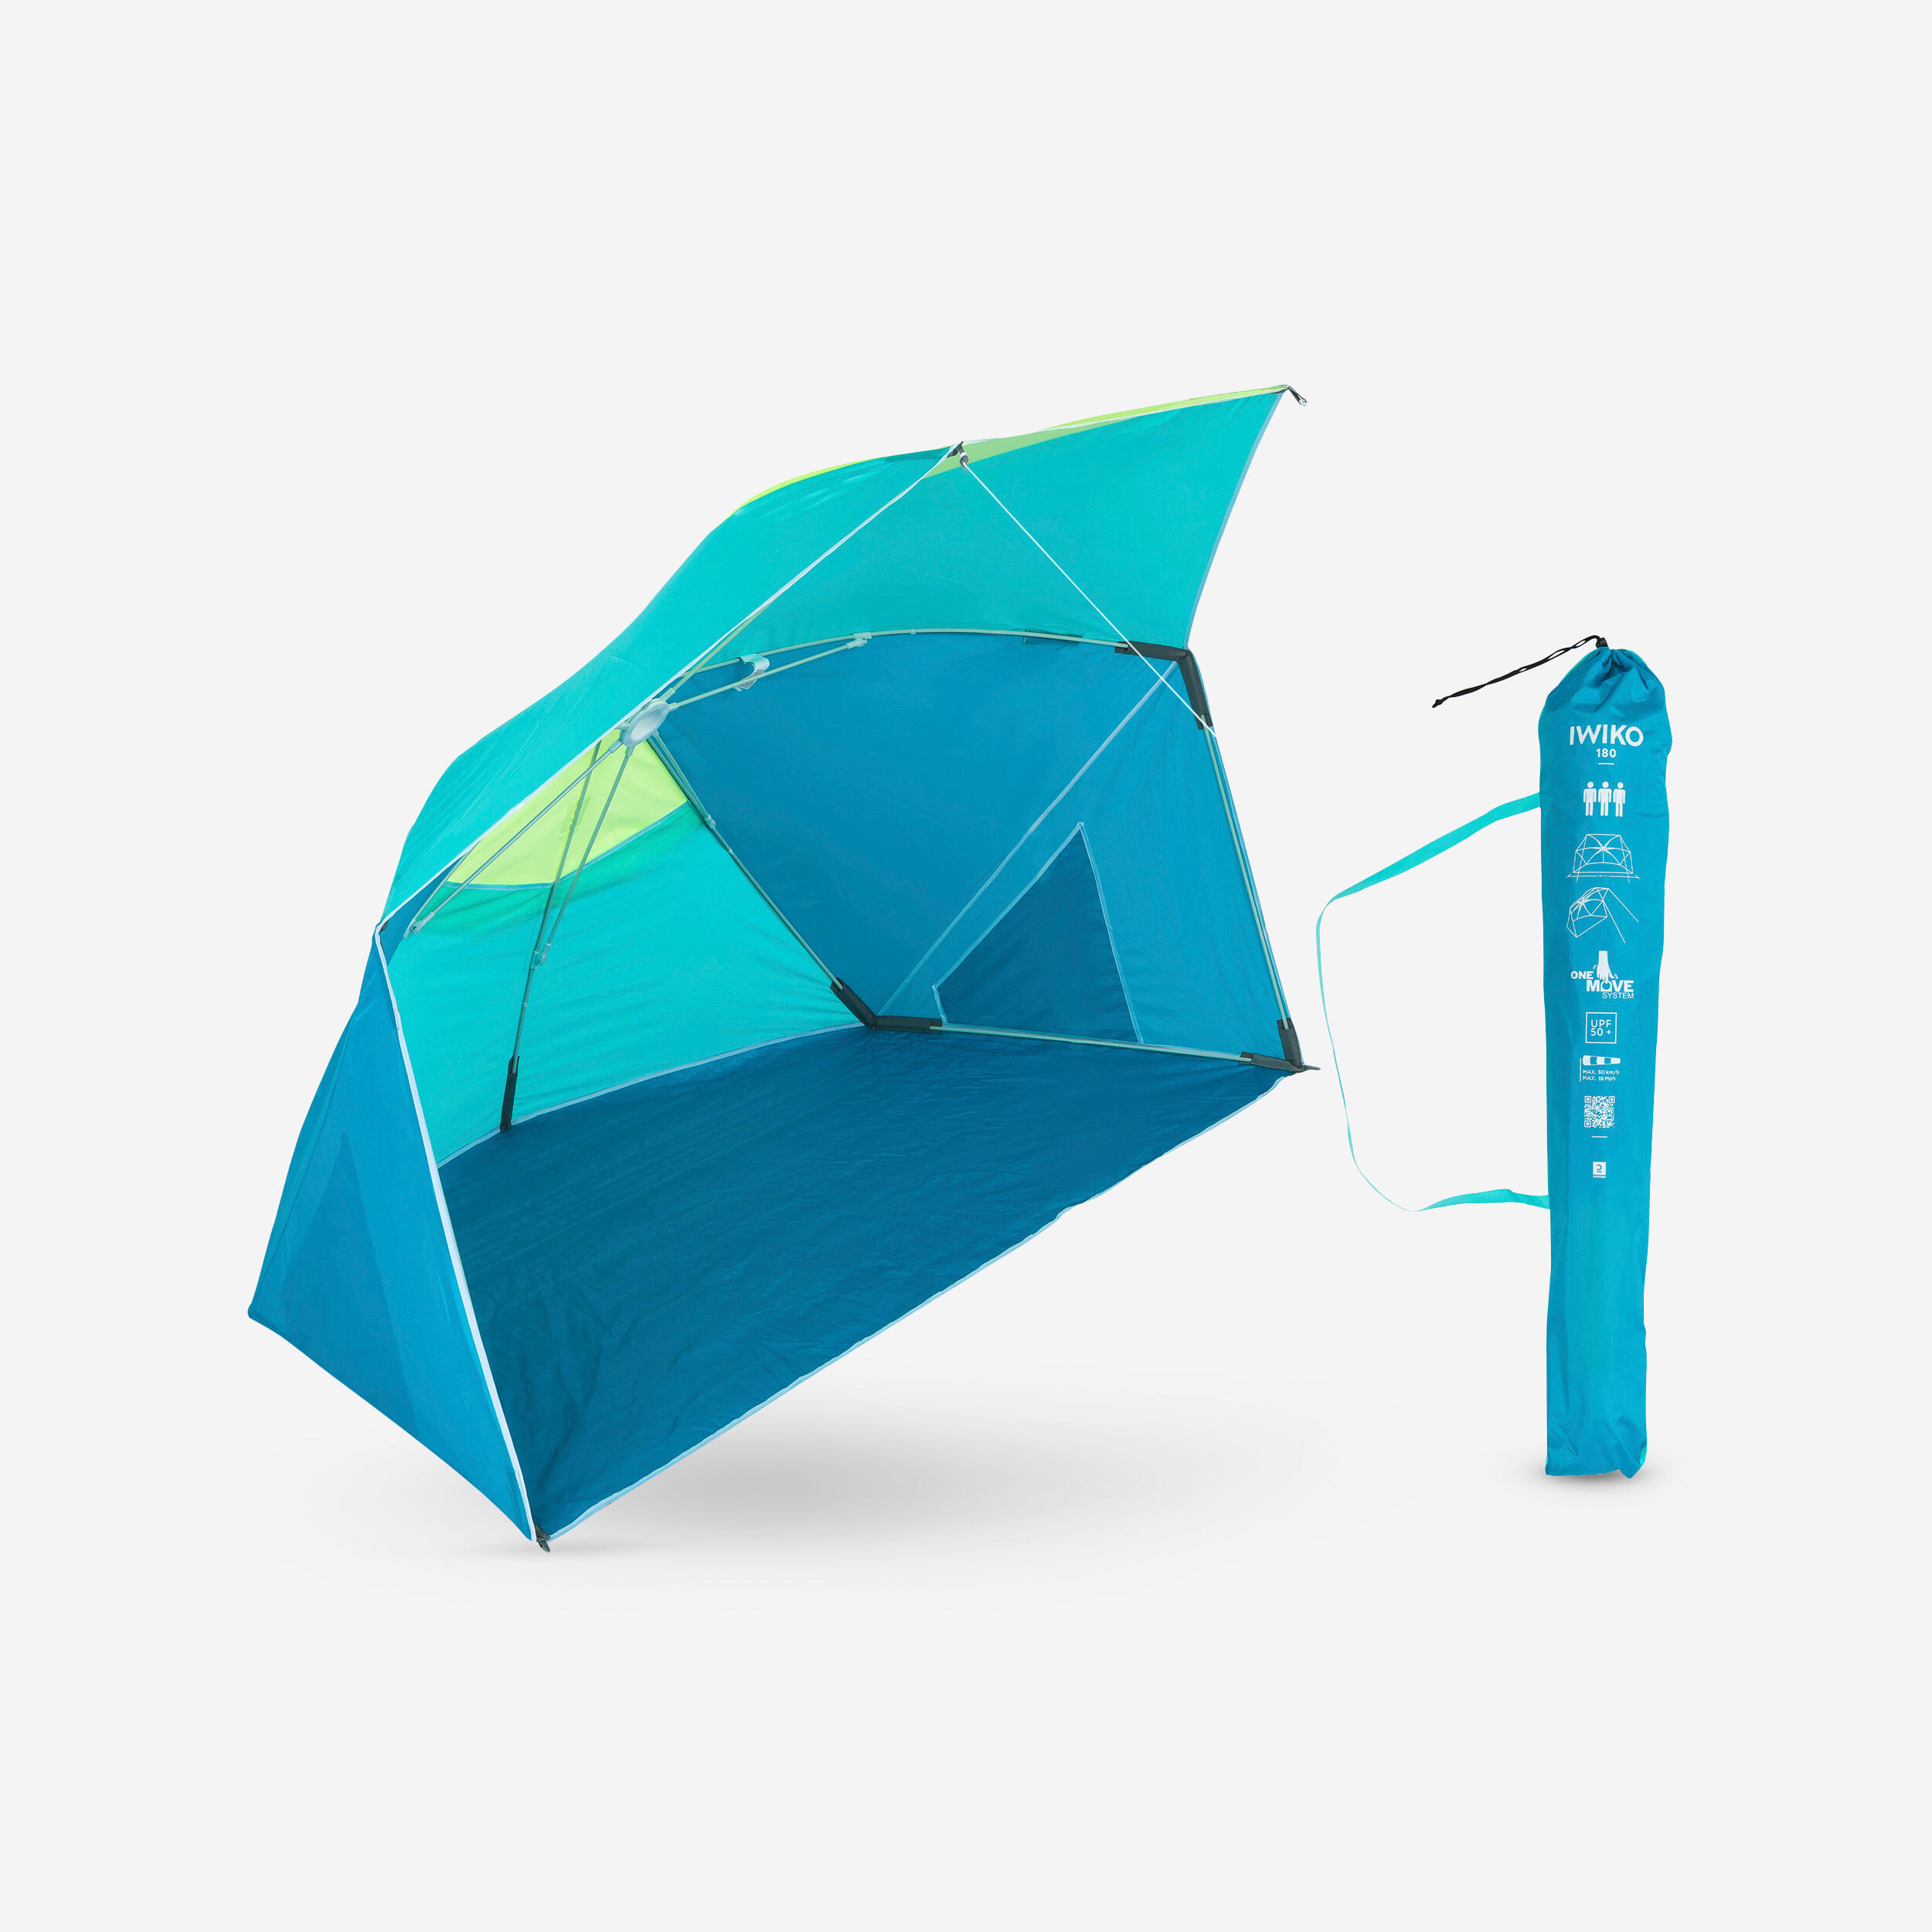 parasol abri plage solaire iwiko 180 bleu jaune upf50+ 3 places - decathlon